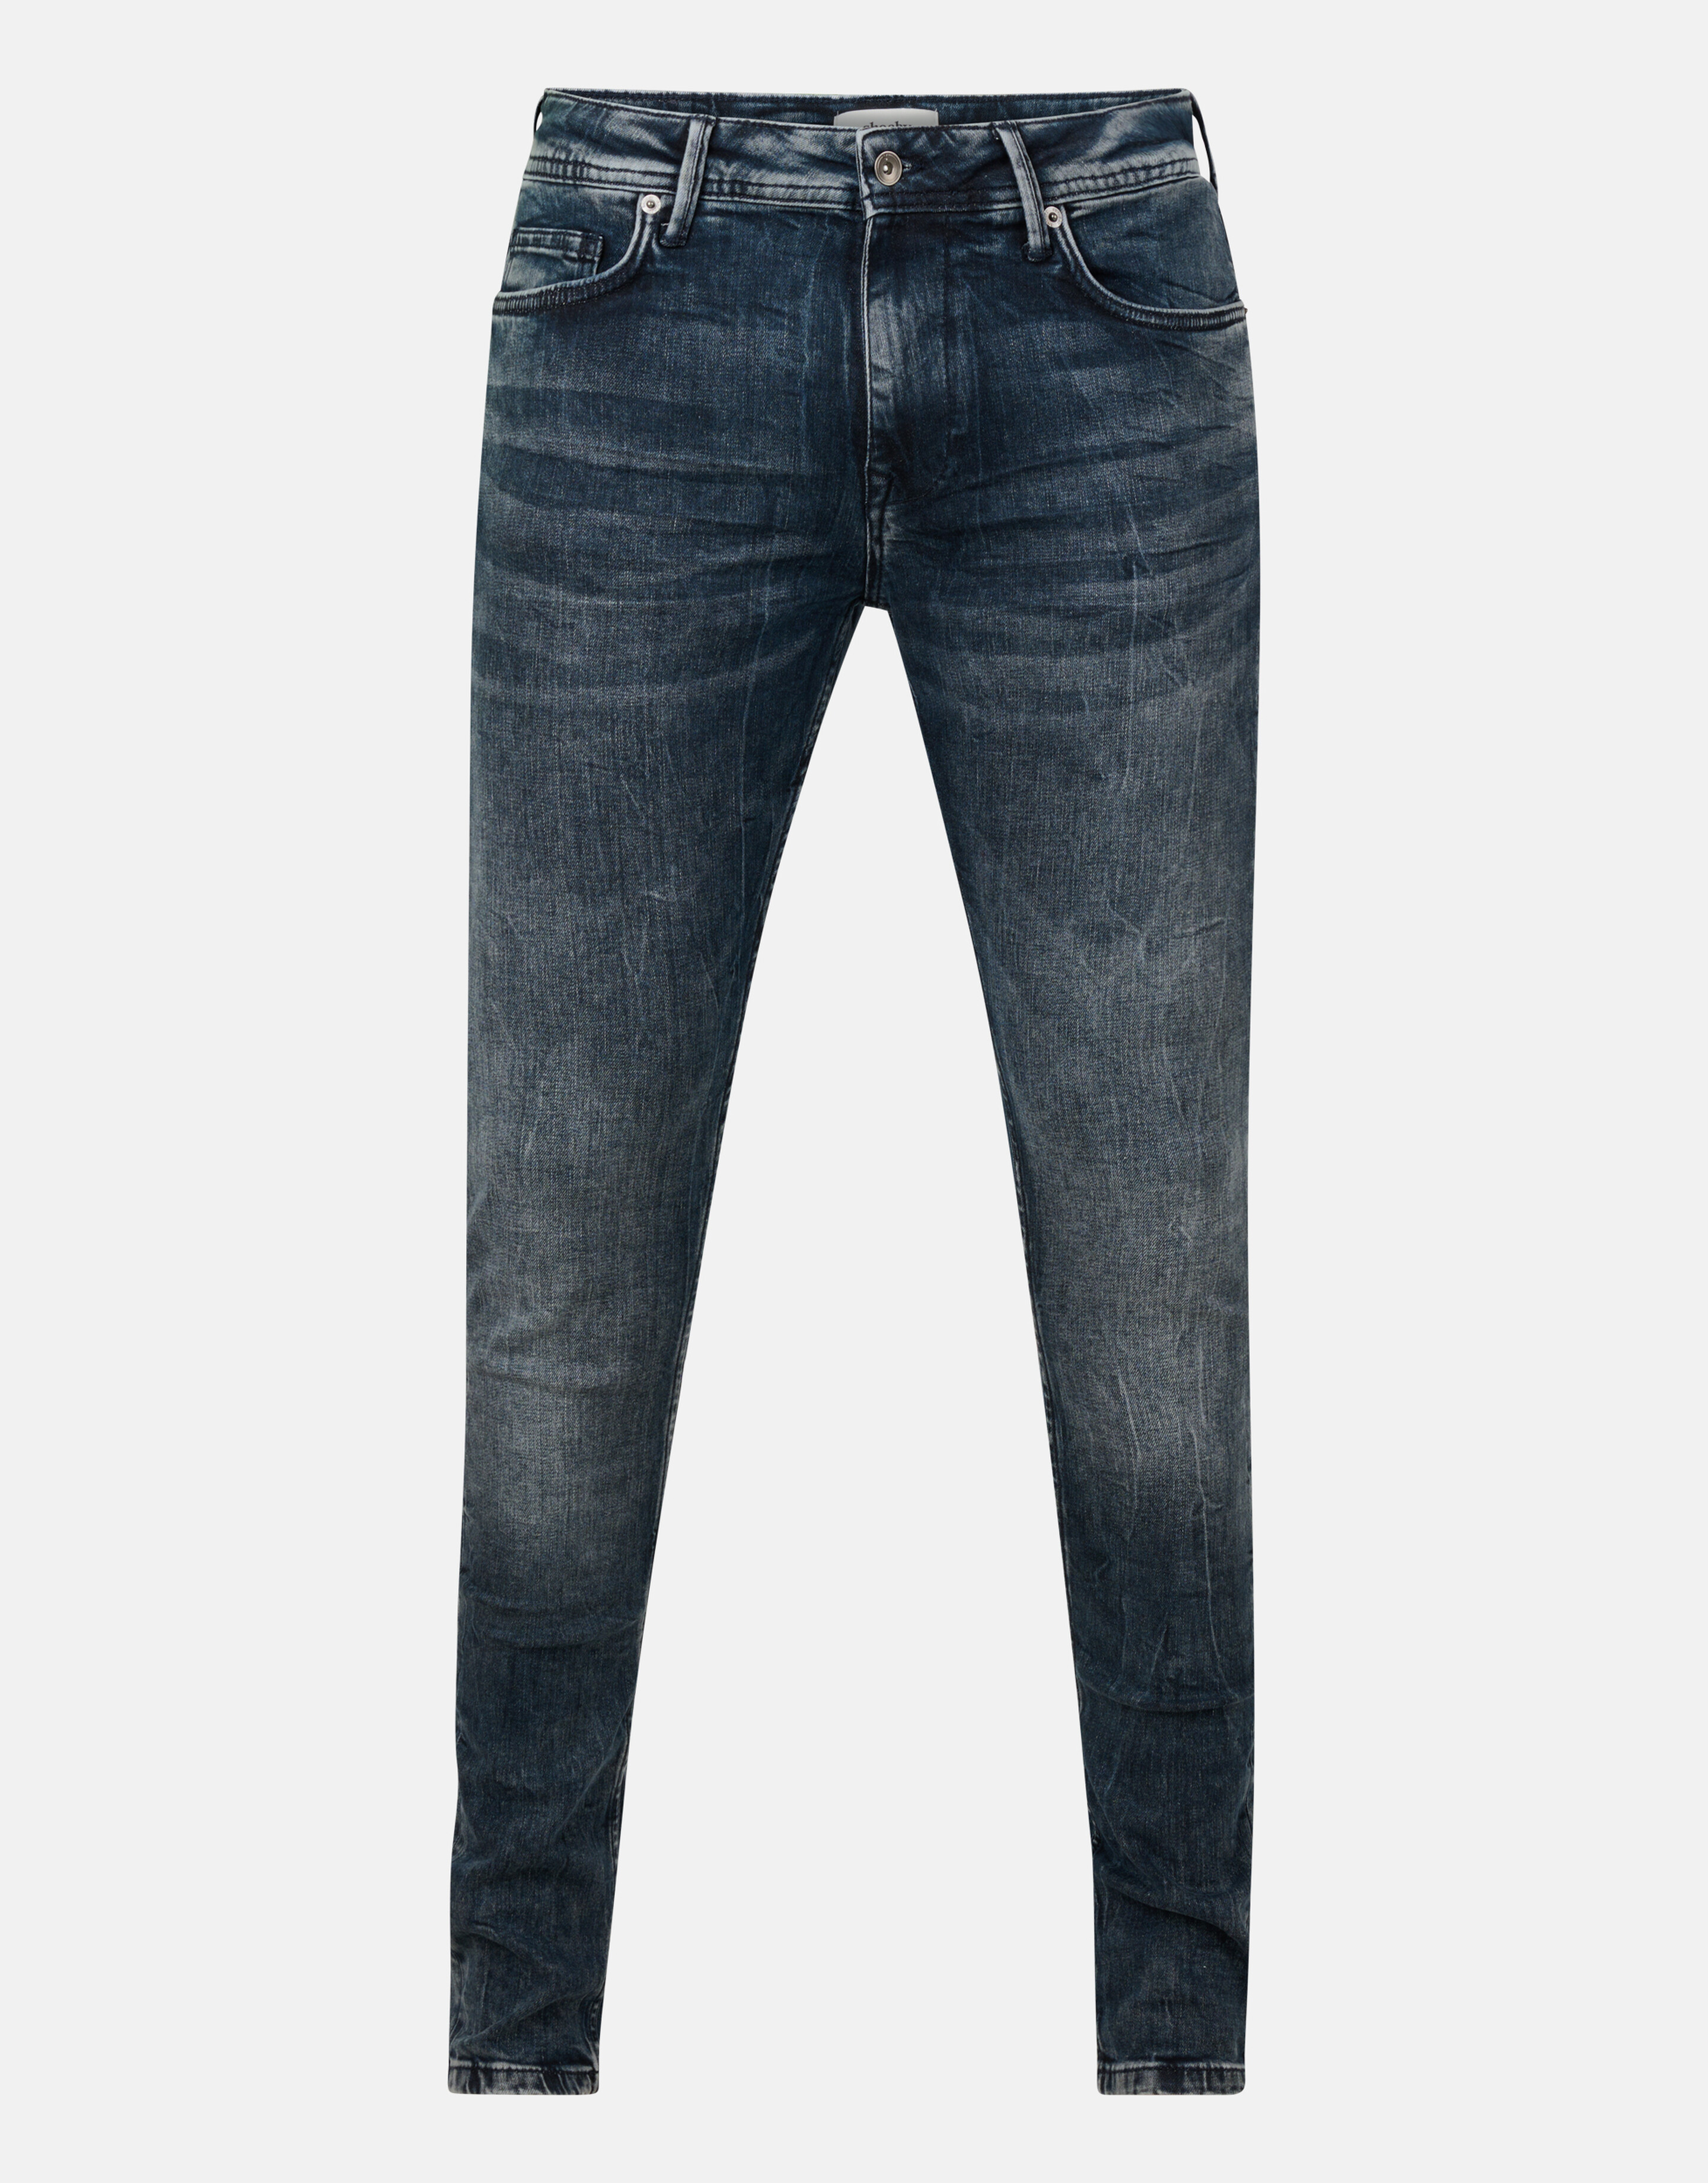 Skinny Jeans Blauw/Grijs L32 SHOEBY MEN